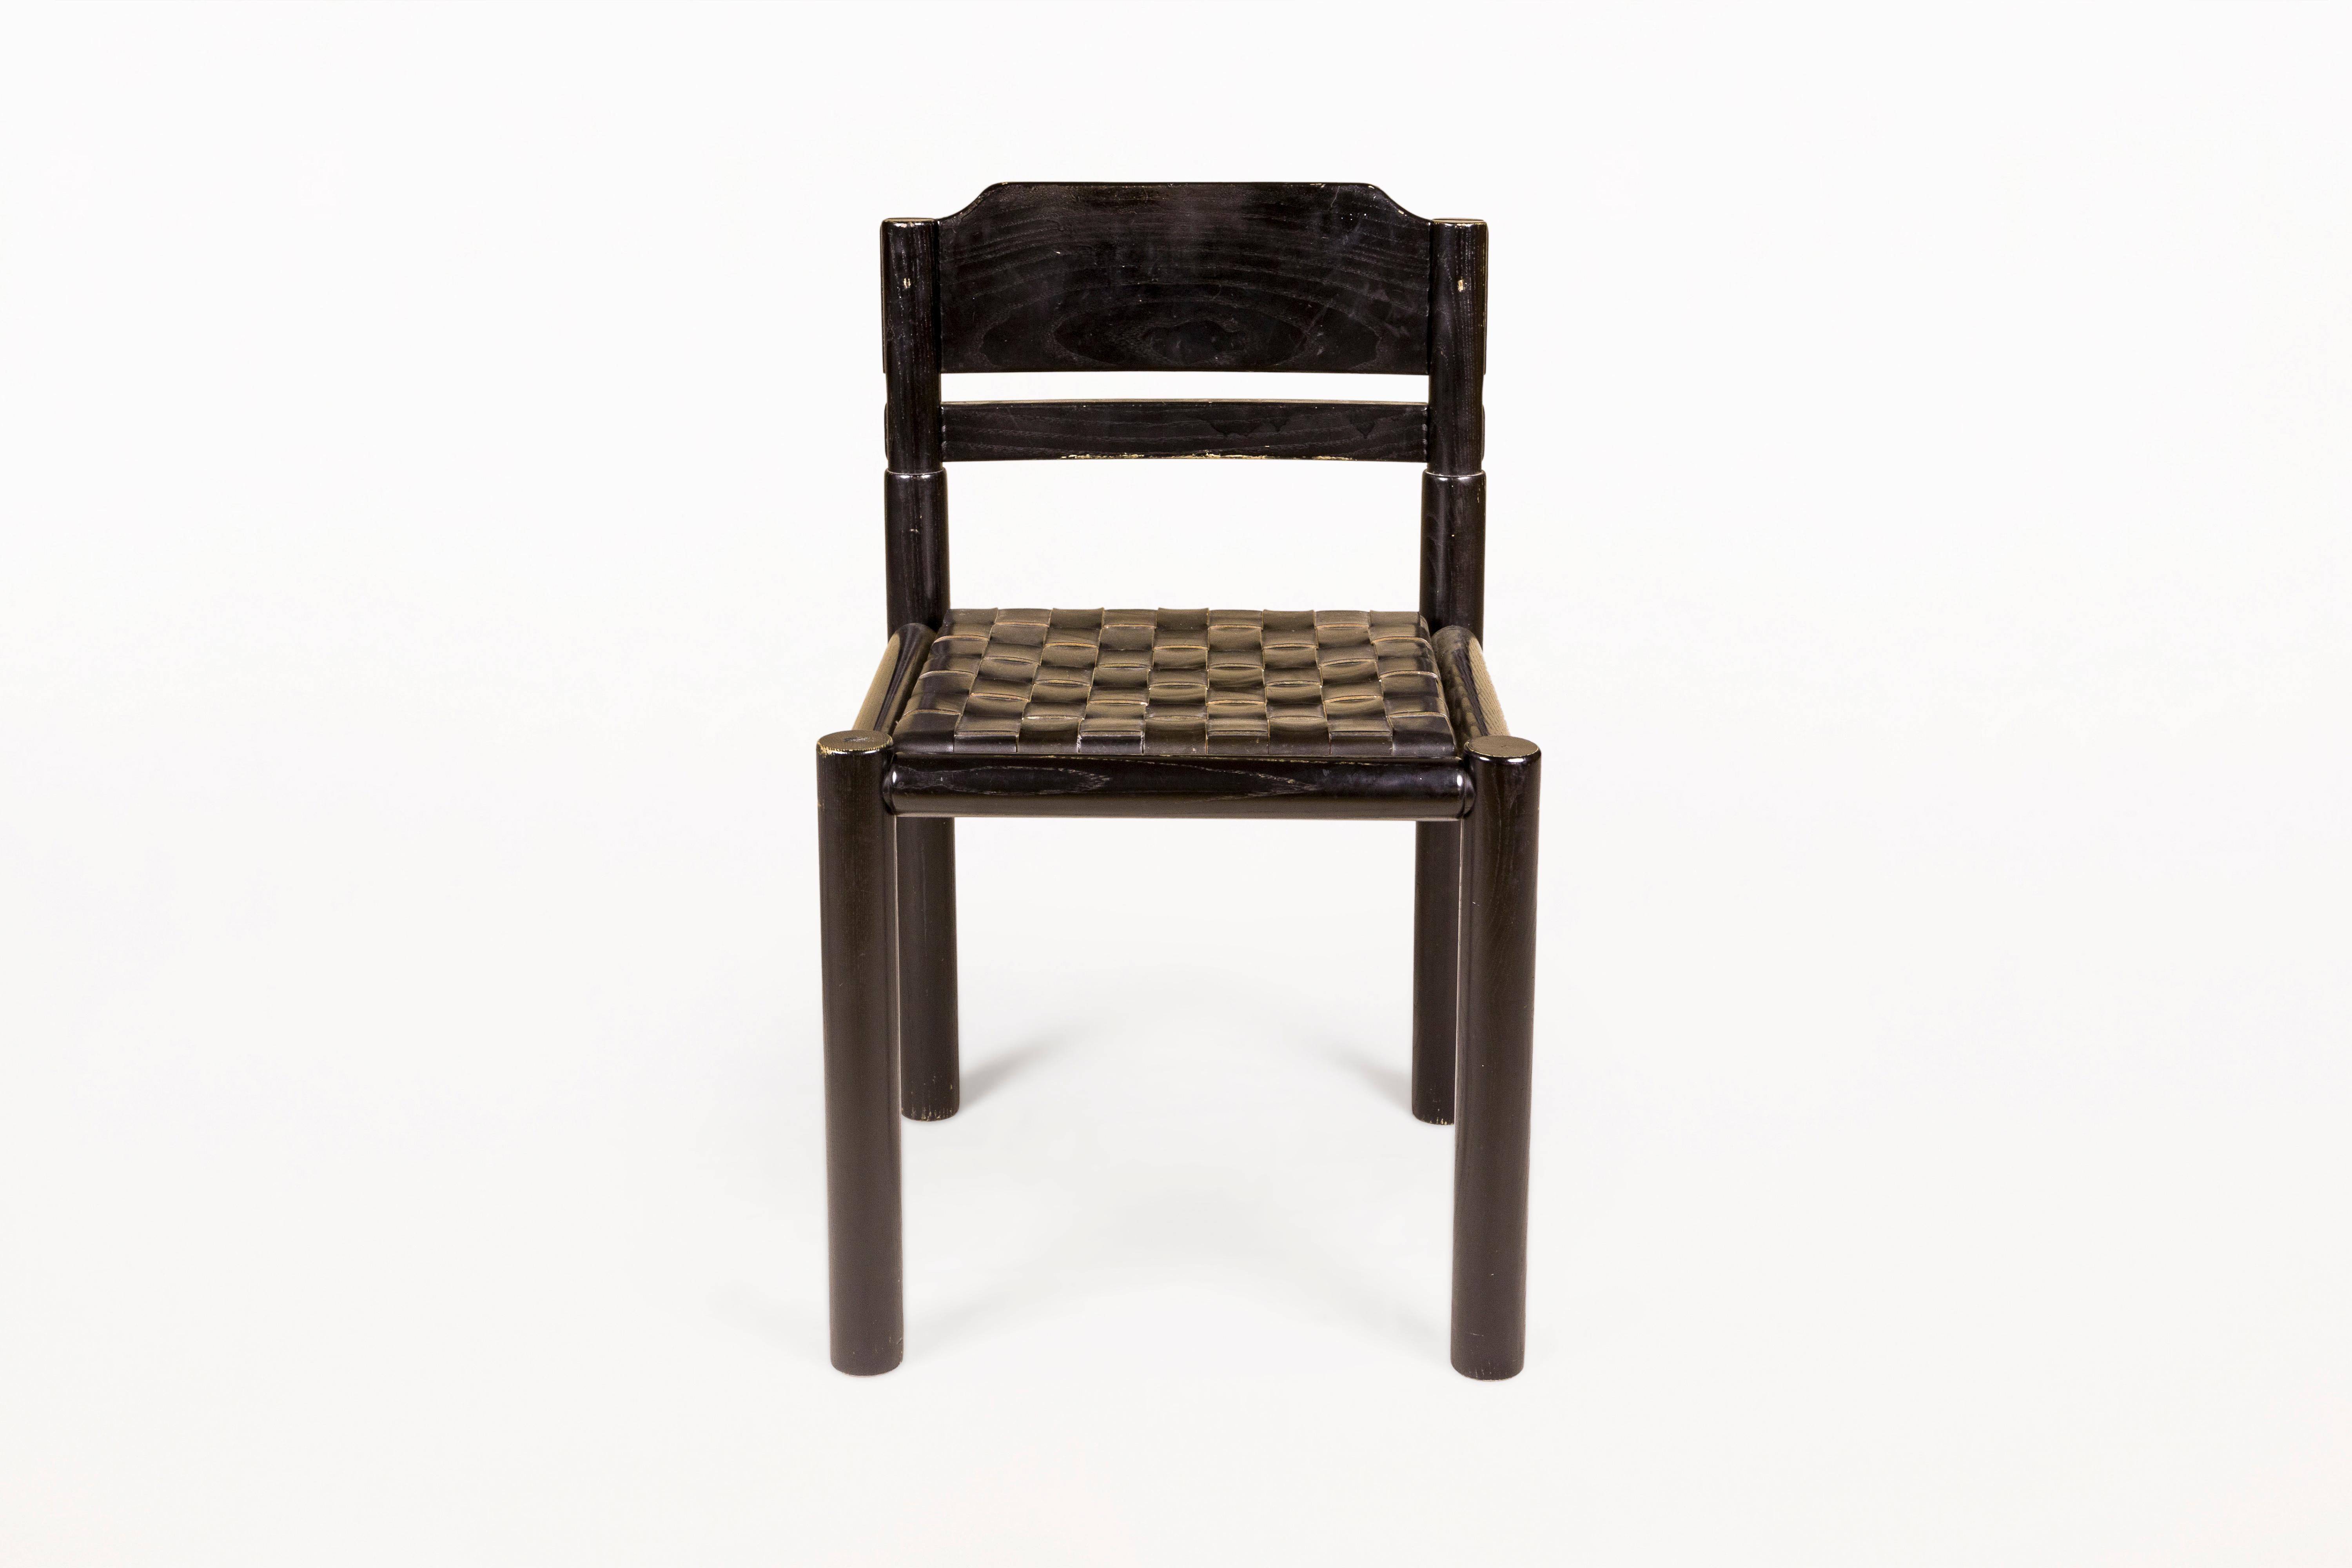 Satz von sechs Stühlen.
Sehr dekorativ.
Hergestellt aus getöntem Eichenholz und Leder.
Circa 1960, Frankreich.
In sehr gutem Vintage-Zustand.
Mid-Century Modern (MCM) ist eine Designbewegung in den Bereichen Inneneinrichtung, Produkt- und